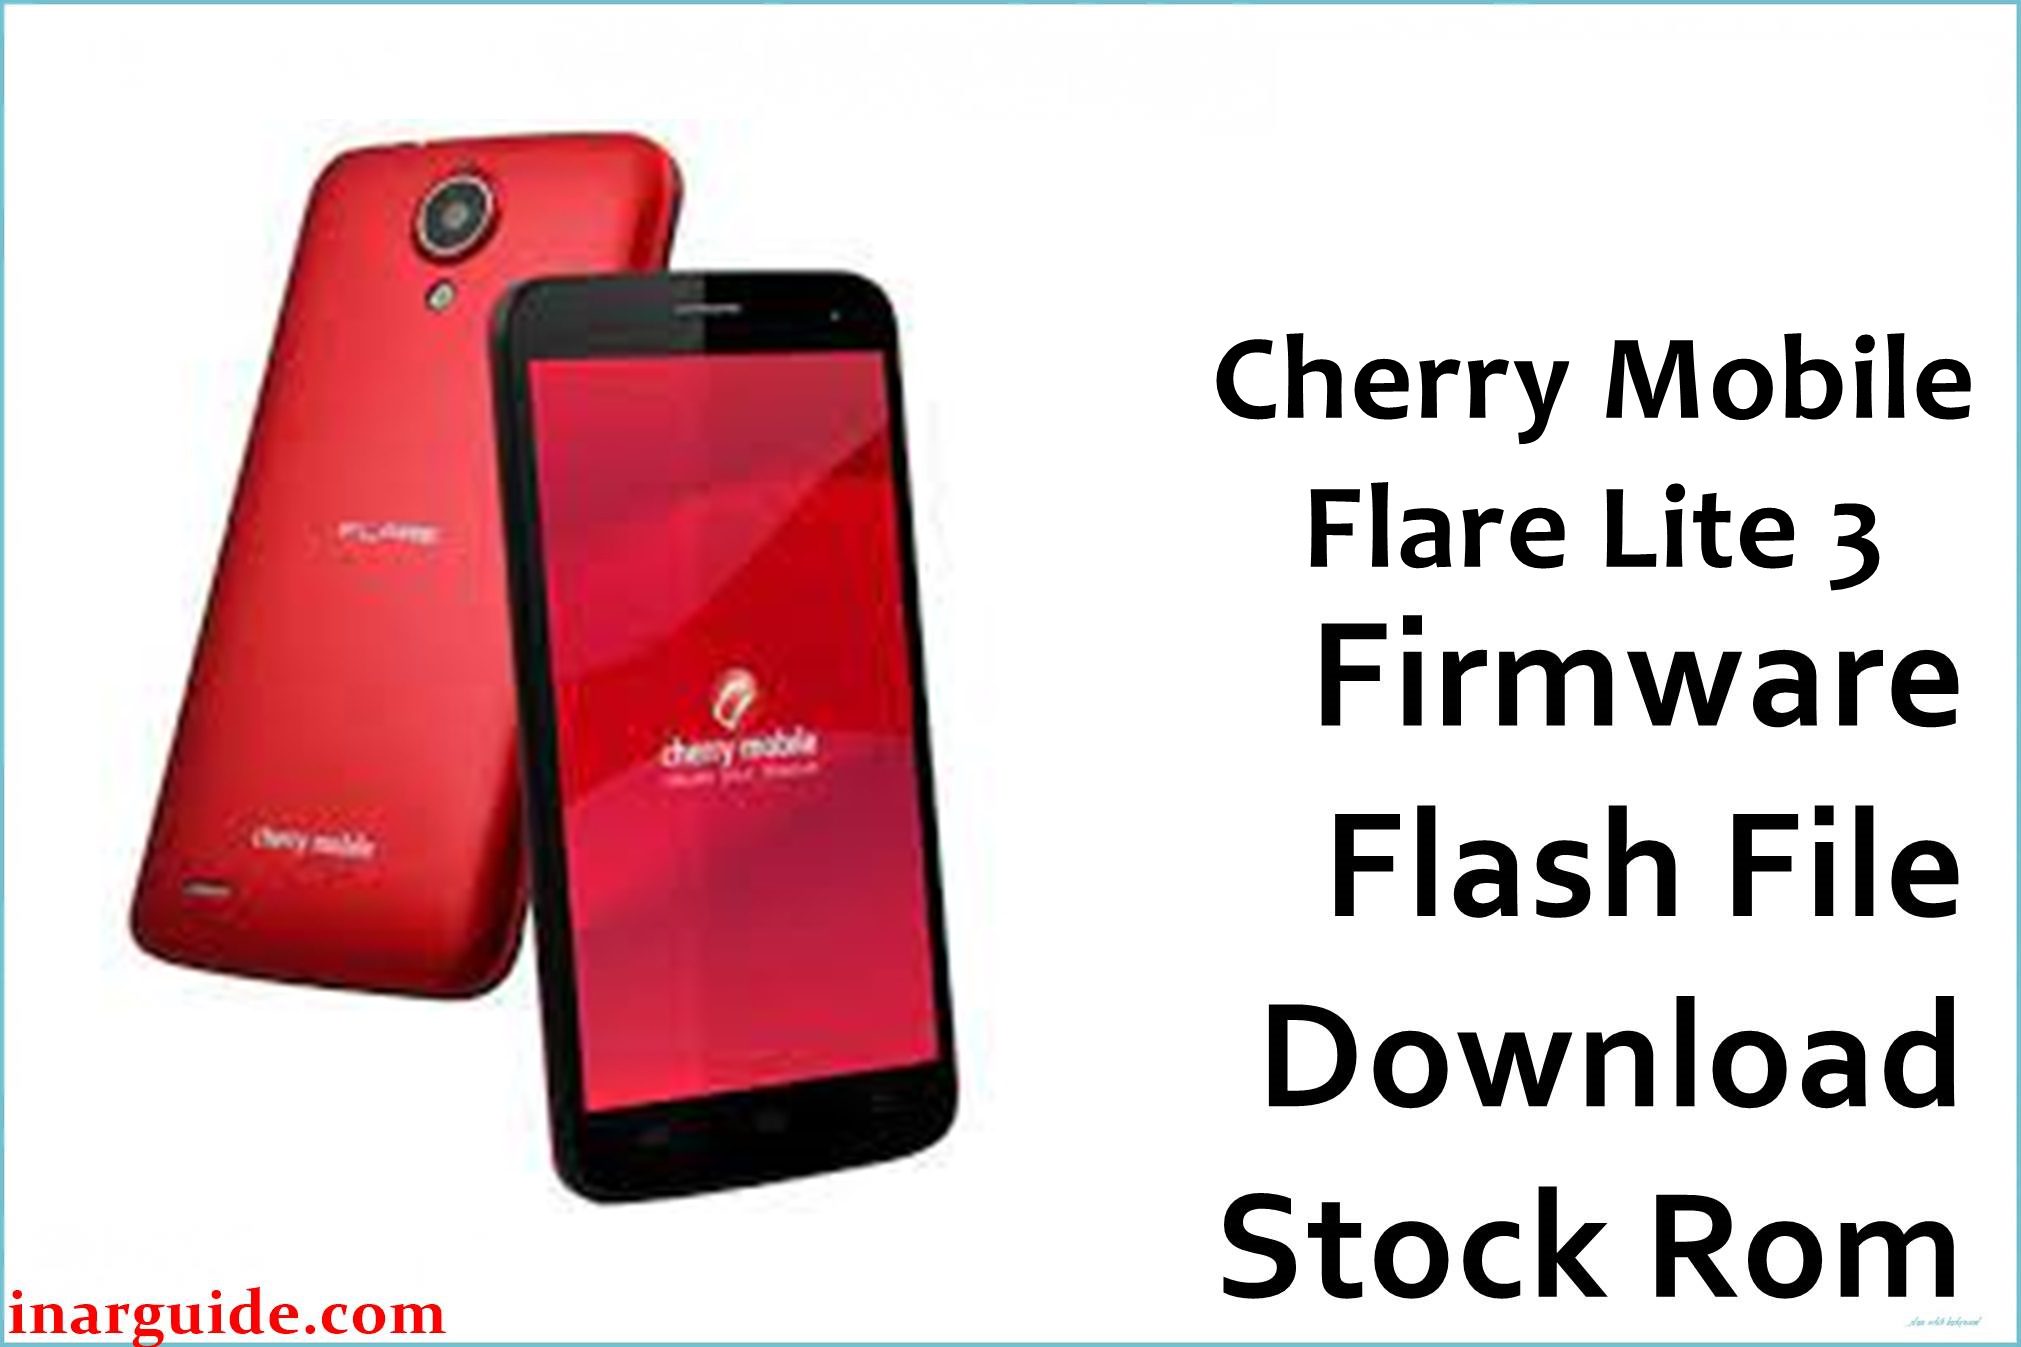 Cherry Mobile Flare Lite 3